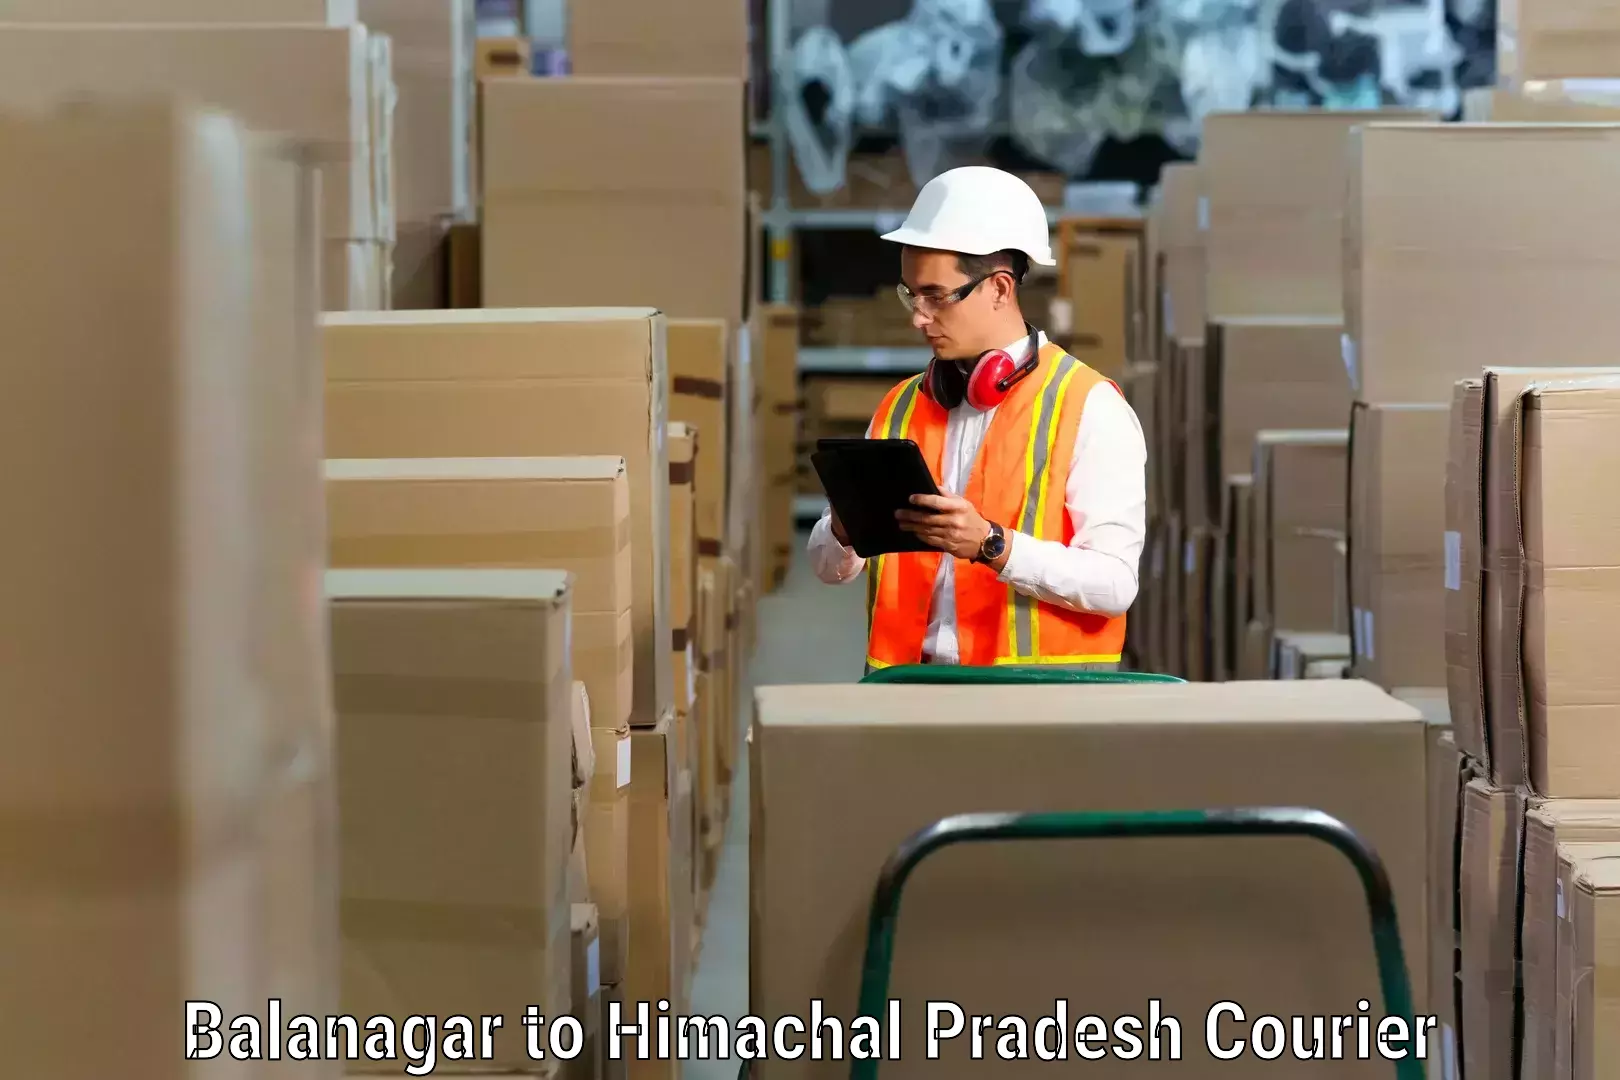 Furniture moving experts in Balanagar to Bangana